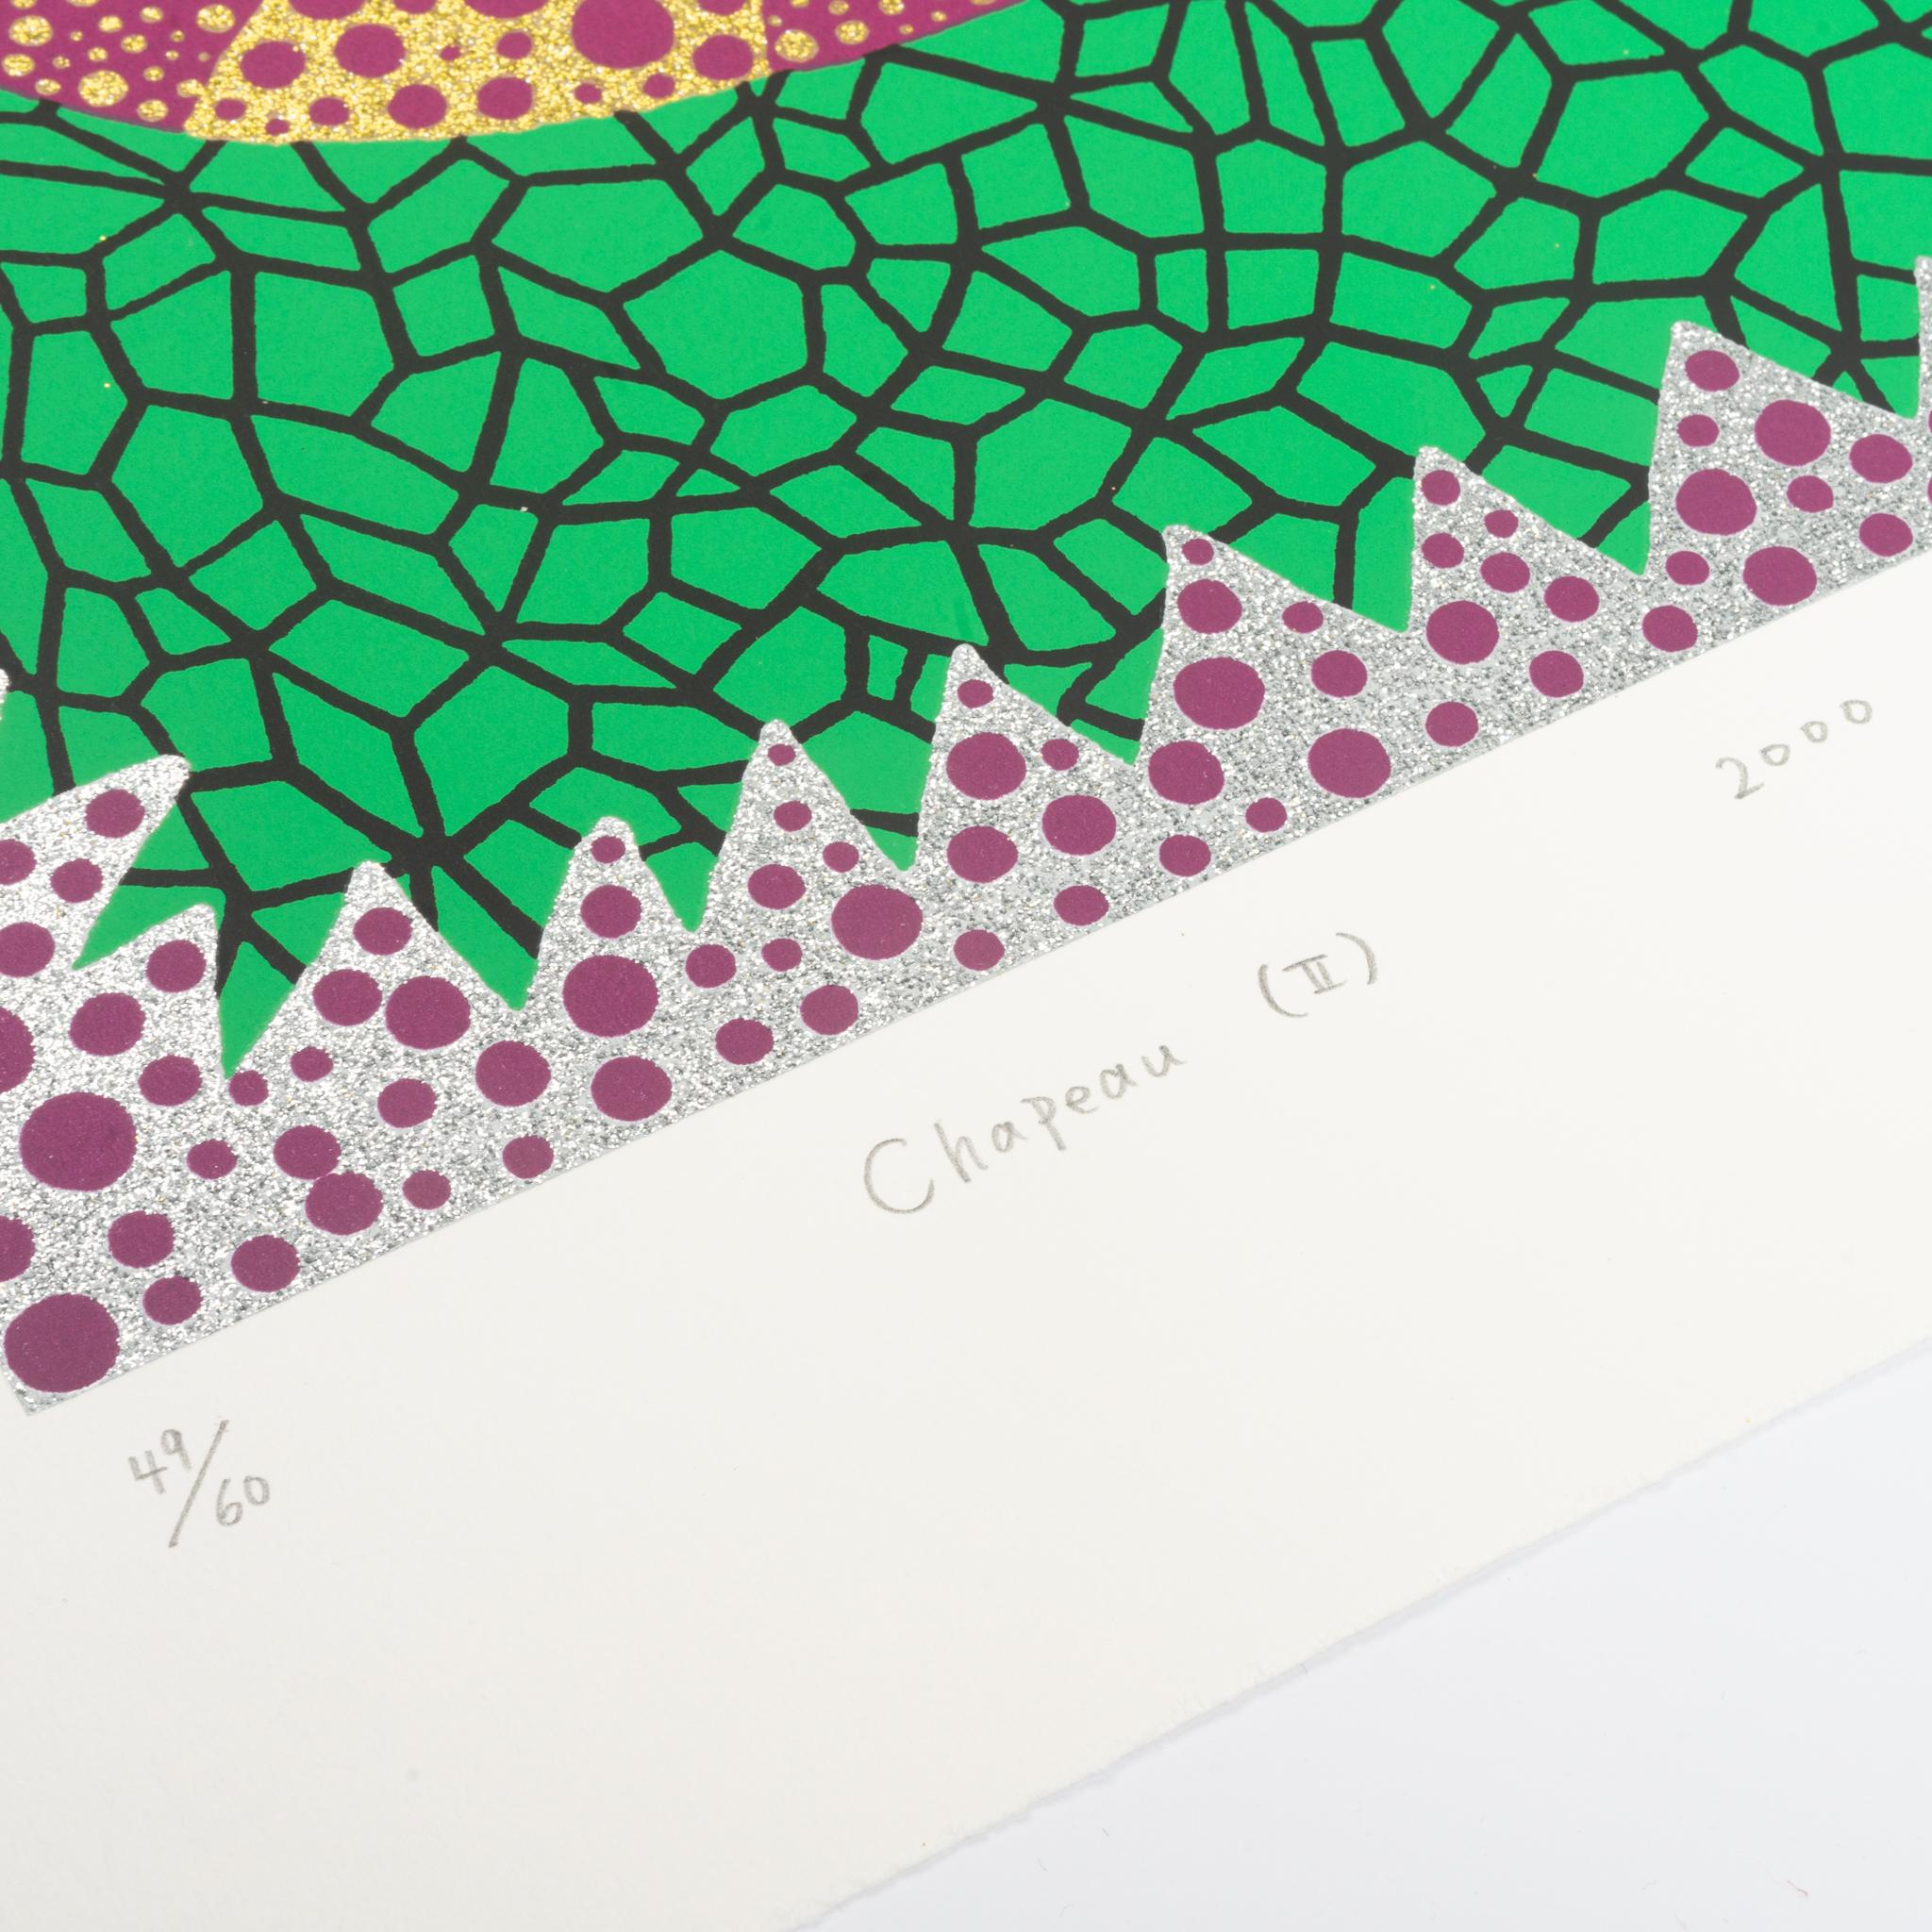 Chapeau (II) - Contemporary Print by Yayoi Kusama